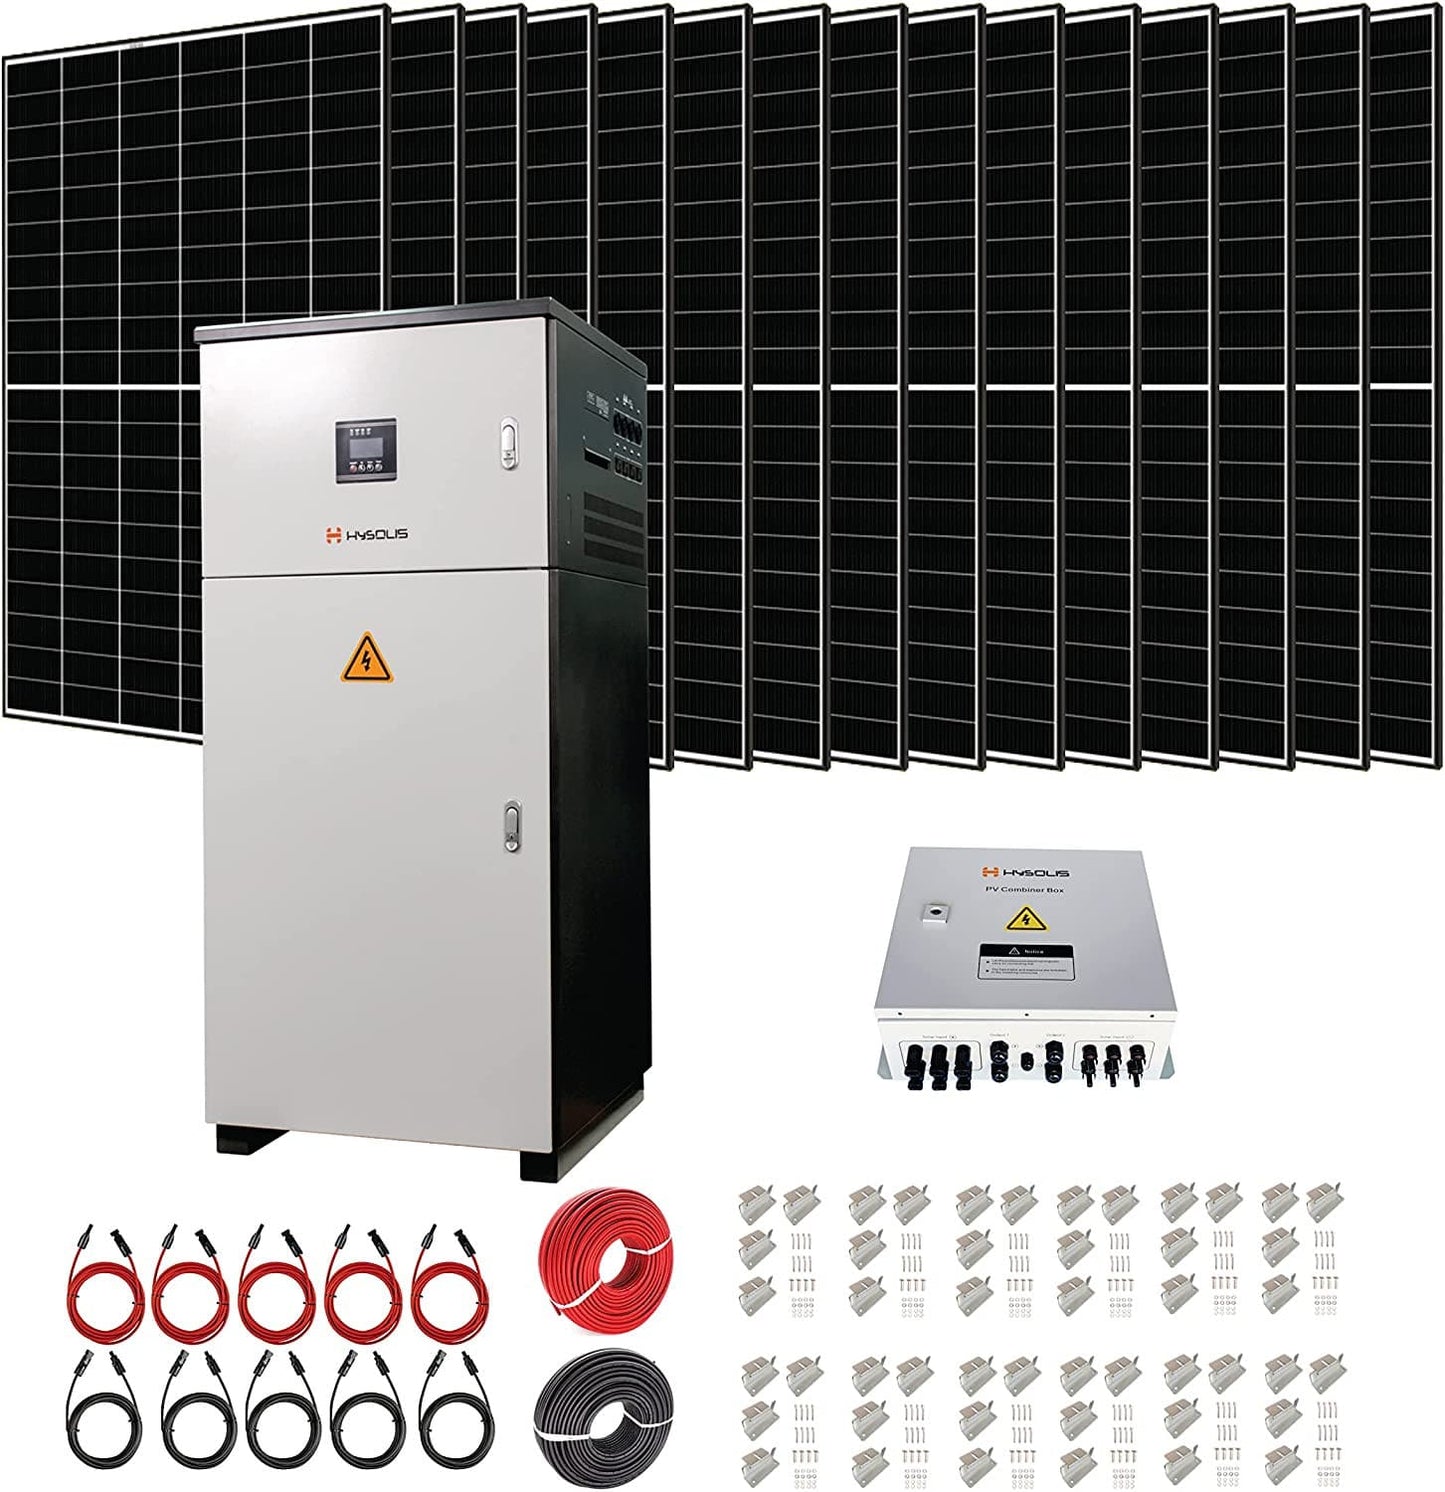 HYSOLIS|Complete 6KW Off-Grid Solar Power Station 120V/240V Split Phase Solar Energy Storage System-EcoPowerit